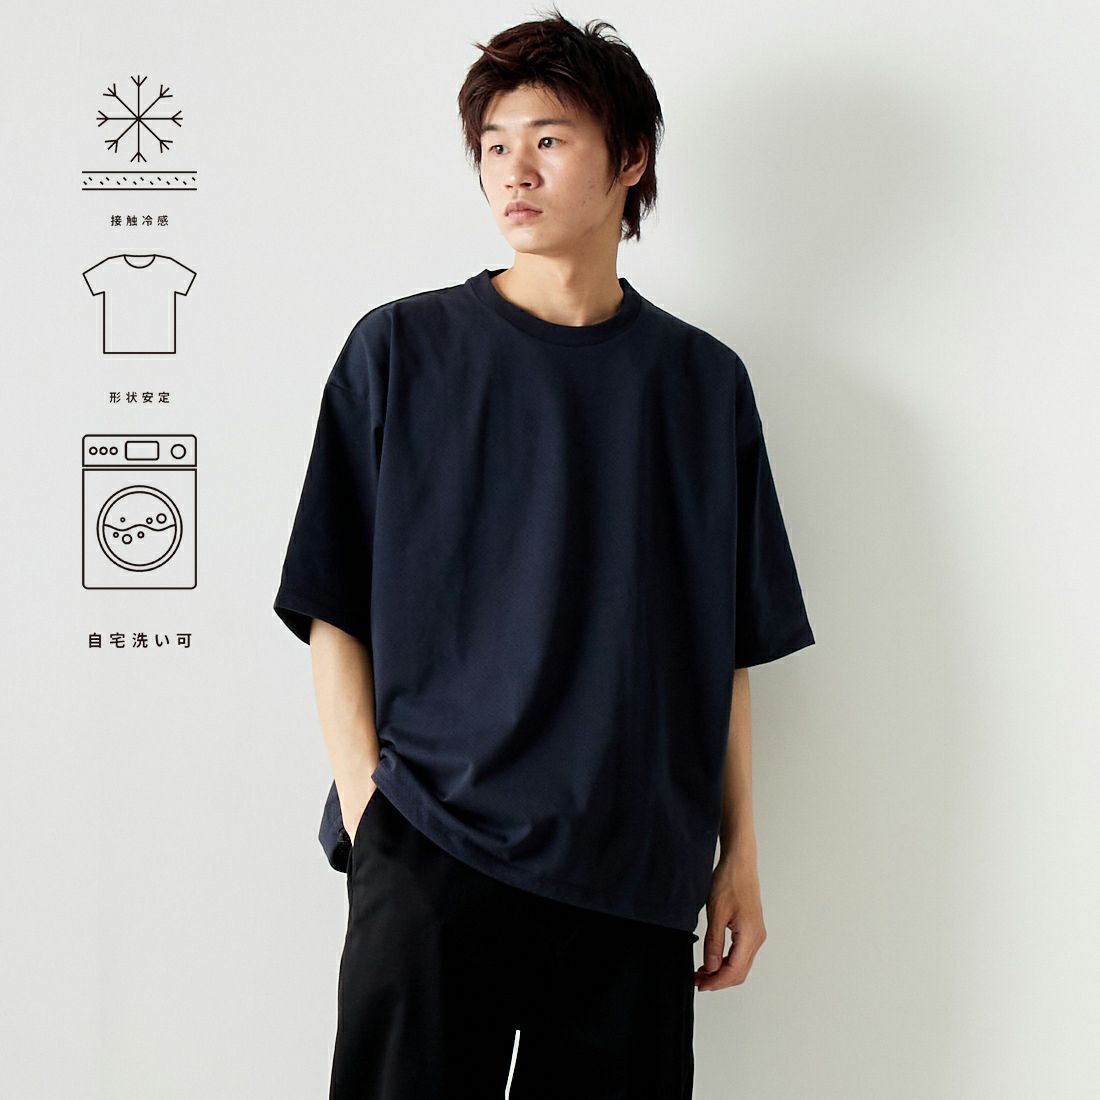 Jeans Factory Clothes [ジーンズファクトリークローズ] ドットエアリードローコードTシャツ [JFC-242-016]